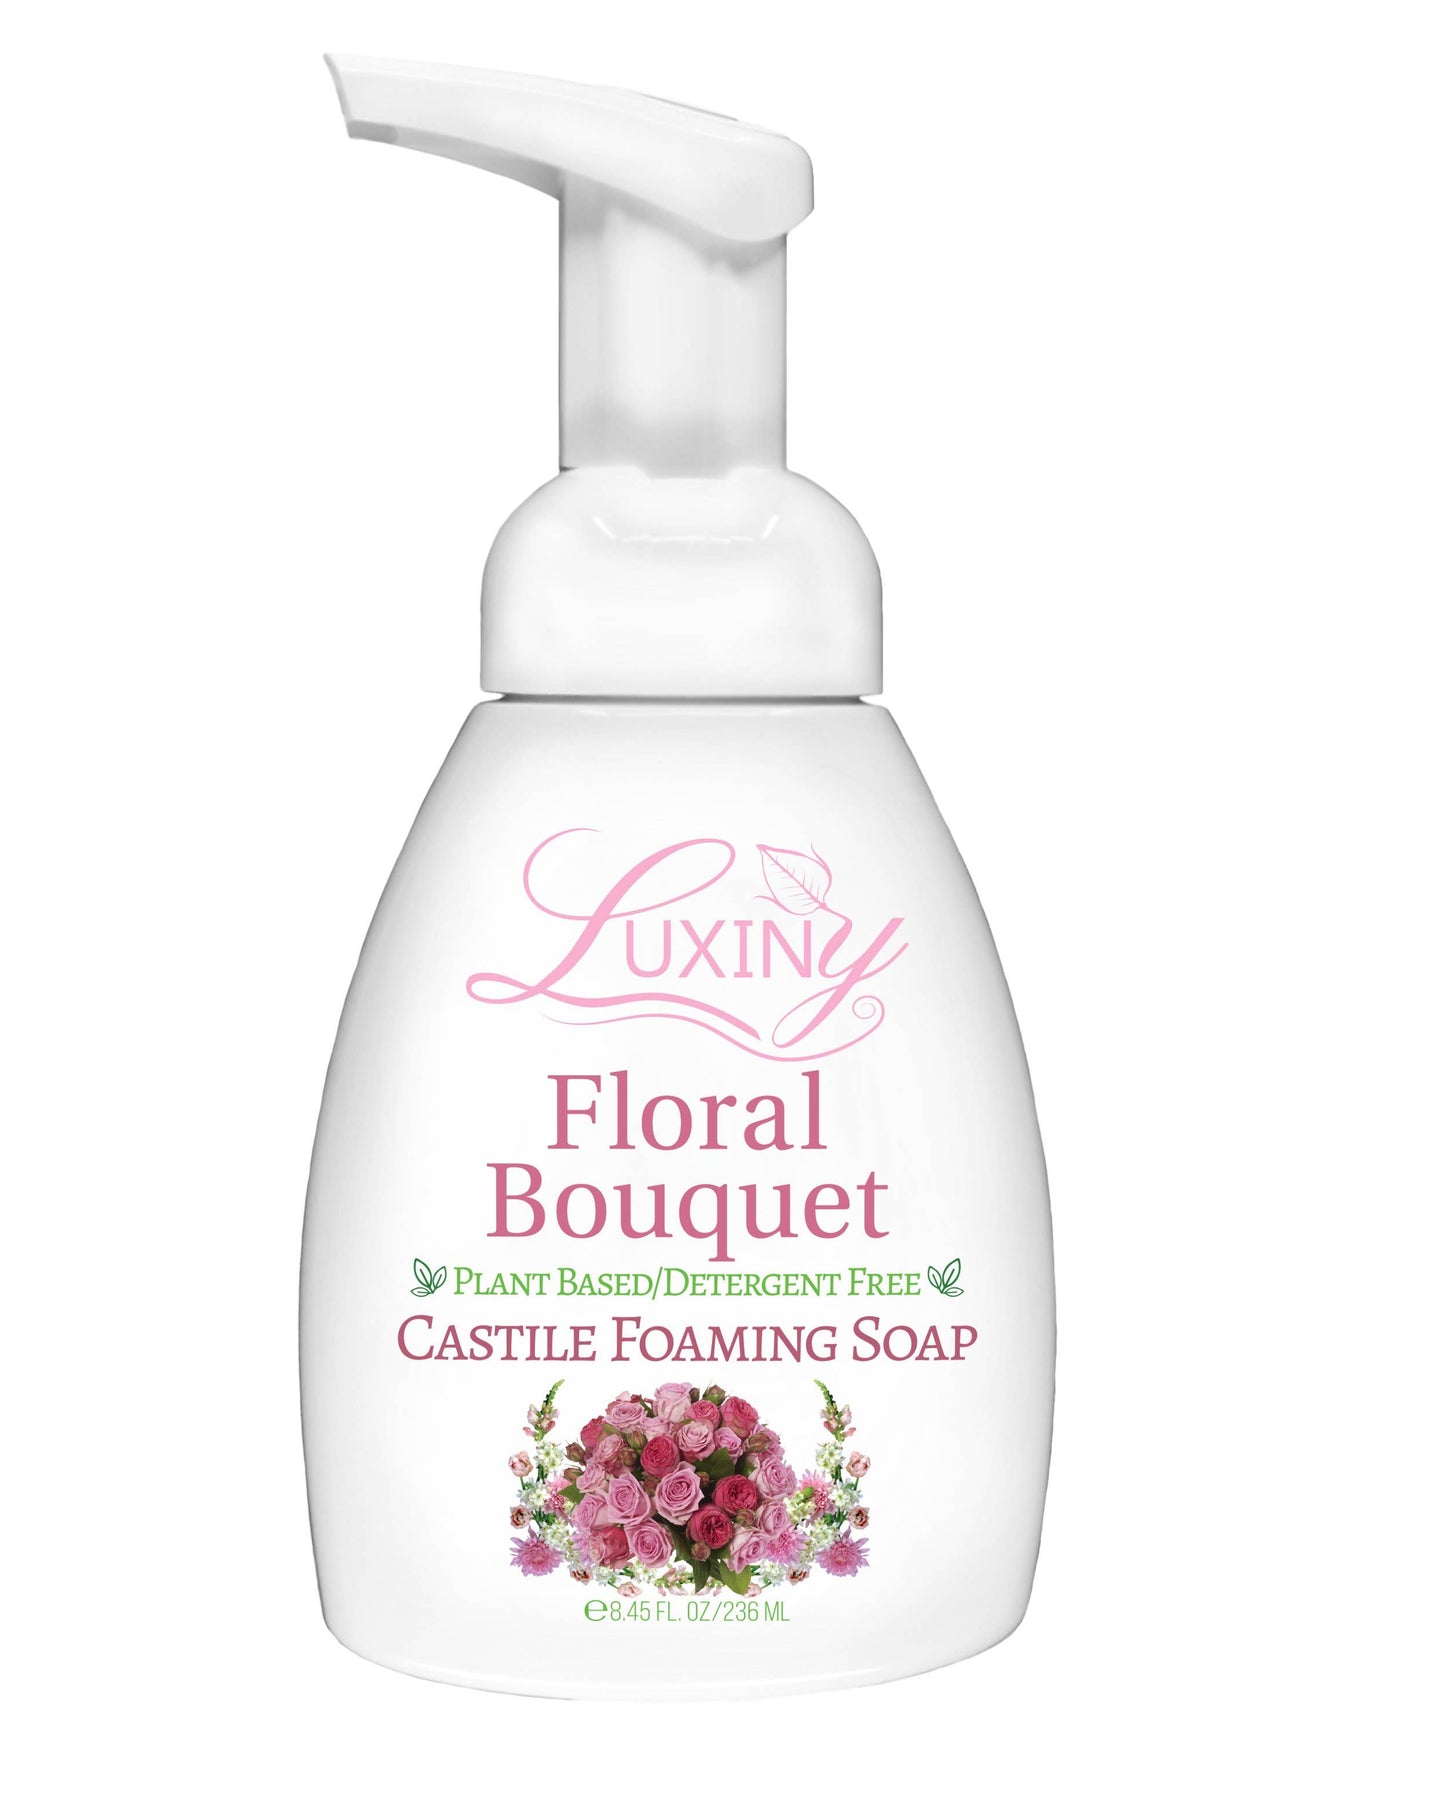 Floral Bouquet Foaming Handmade Castile Soap